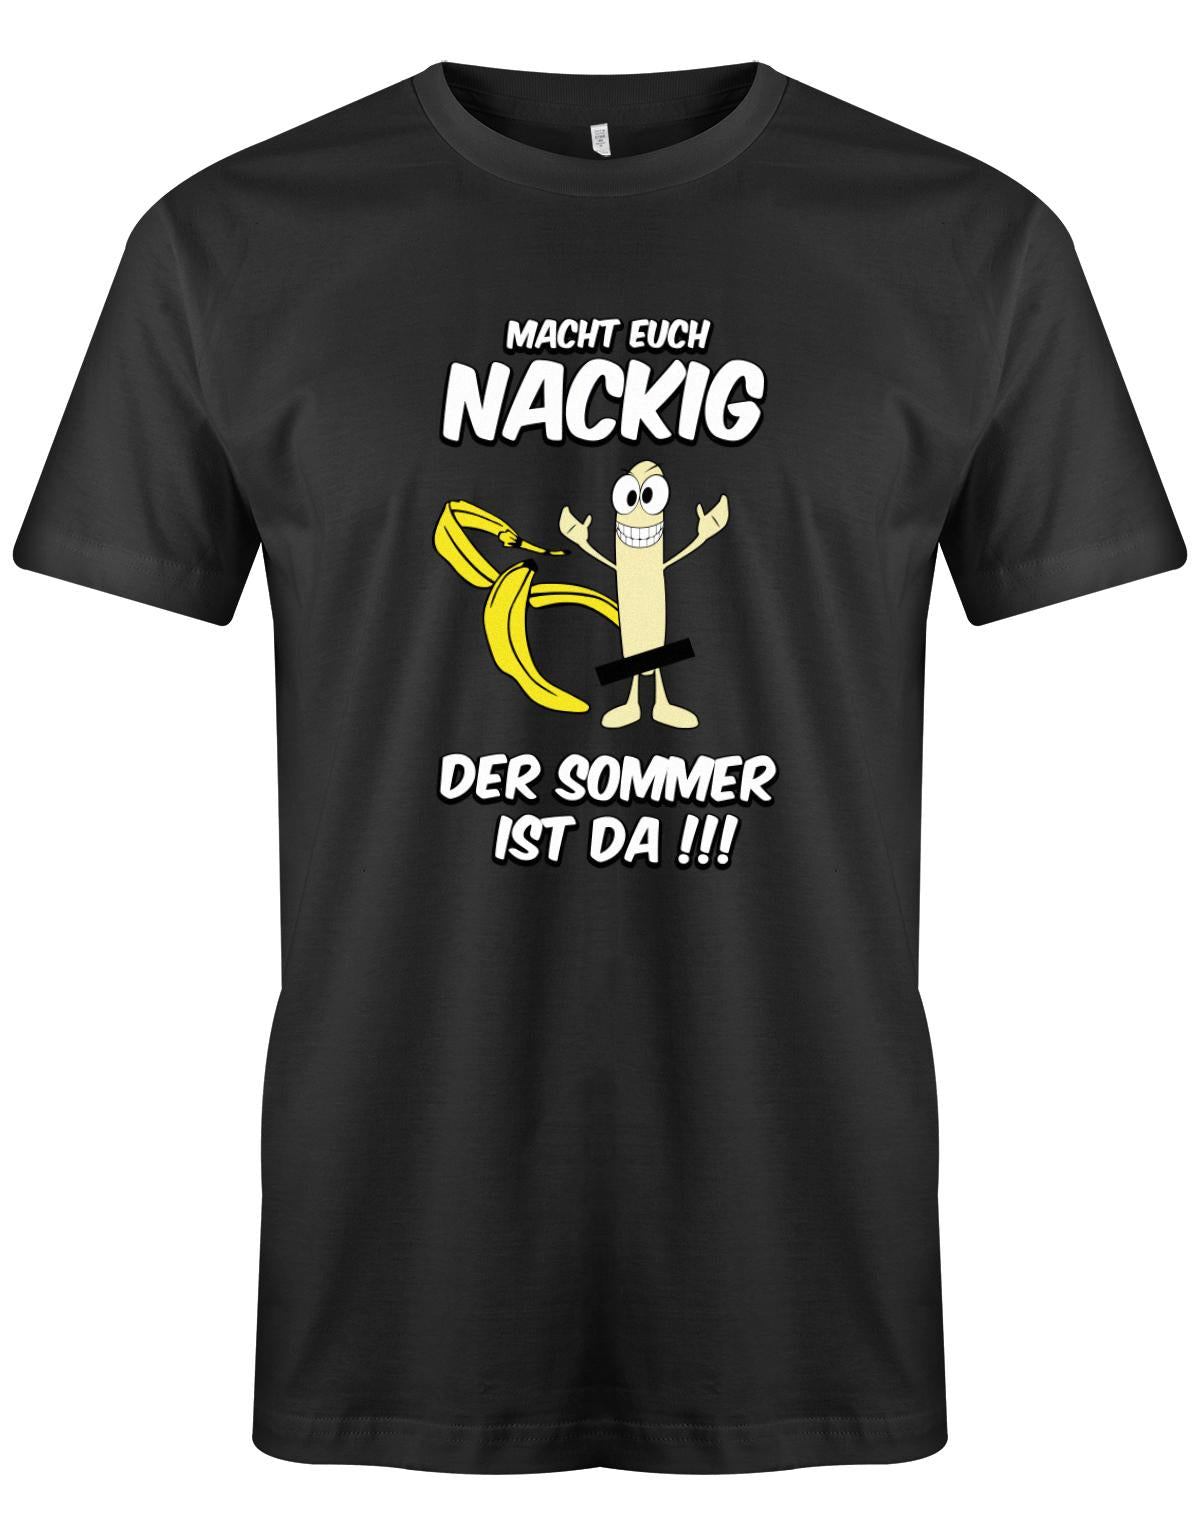 Macht-euch-nackig-dder-Sommer-ist-da-Herren-Shirt-Schwarz